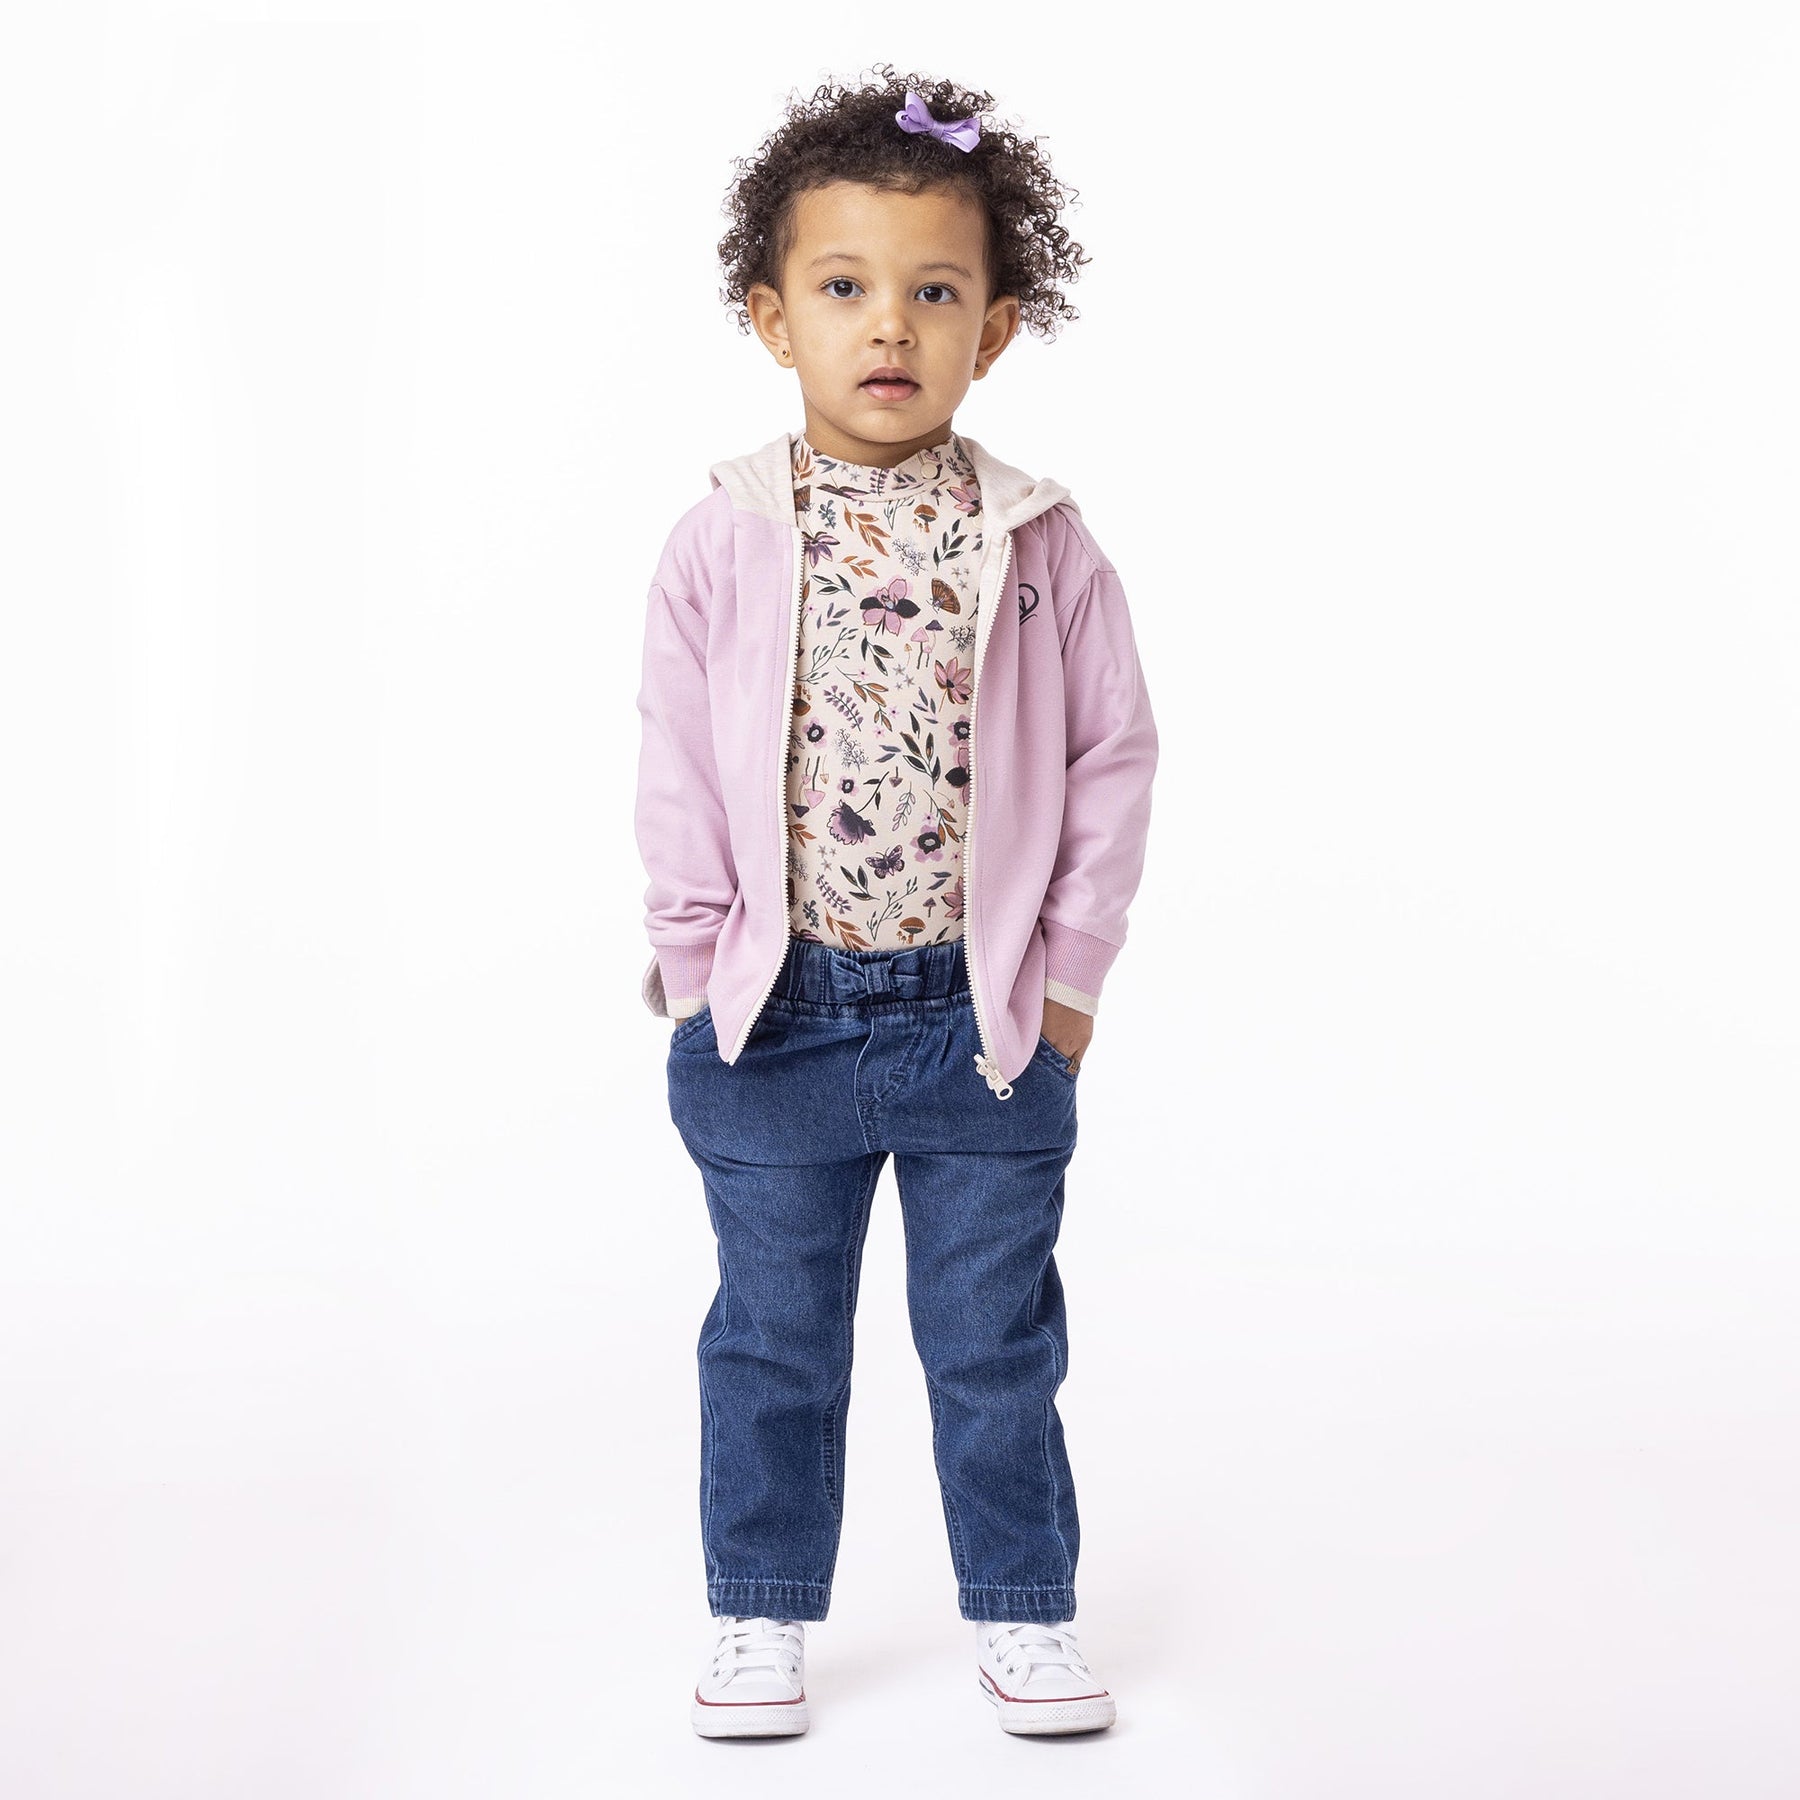 Veste réversible à capuchon pour bébé fille par Nanö | F2352-08 Beige chiné | Boutique Flos, vêtements mode pour bébés et enfants